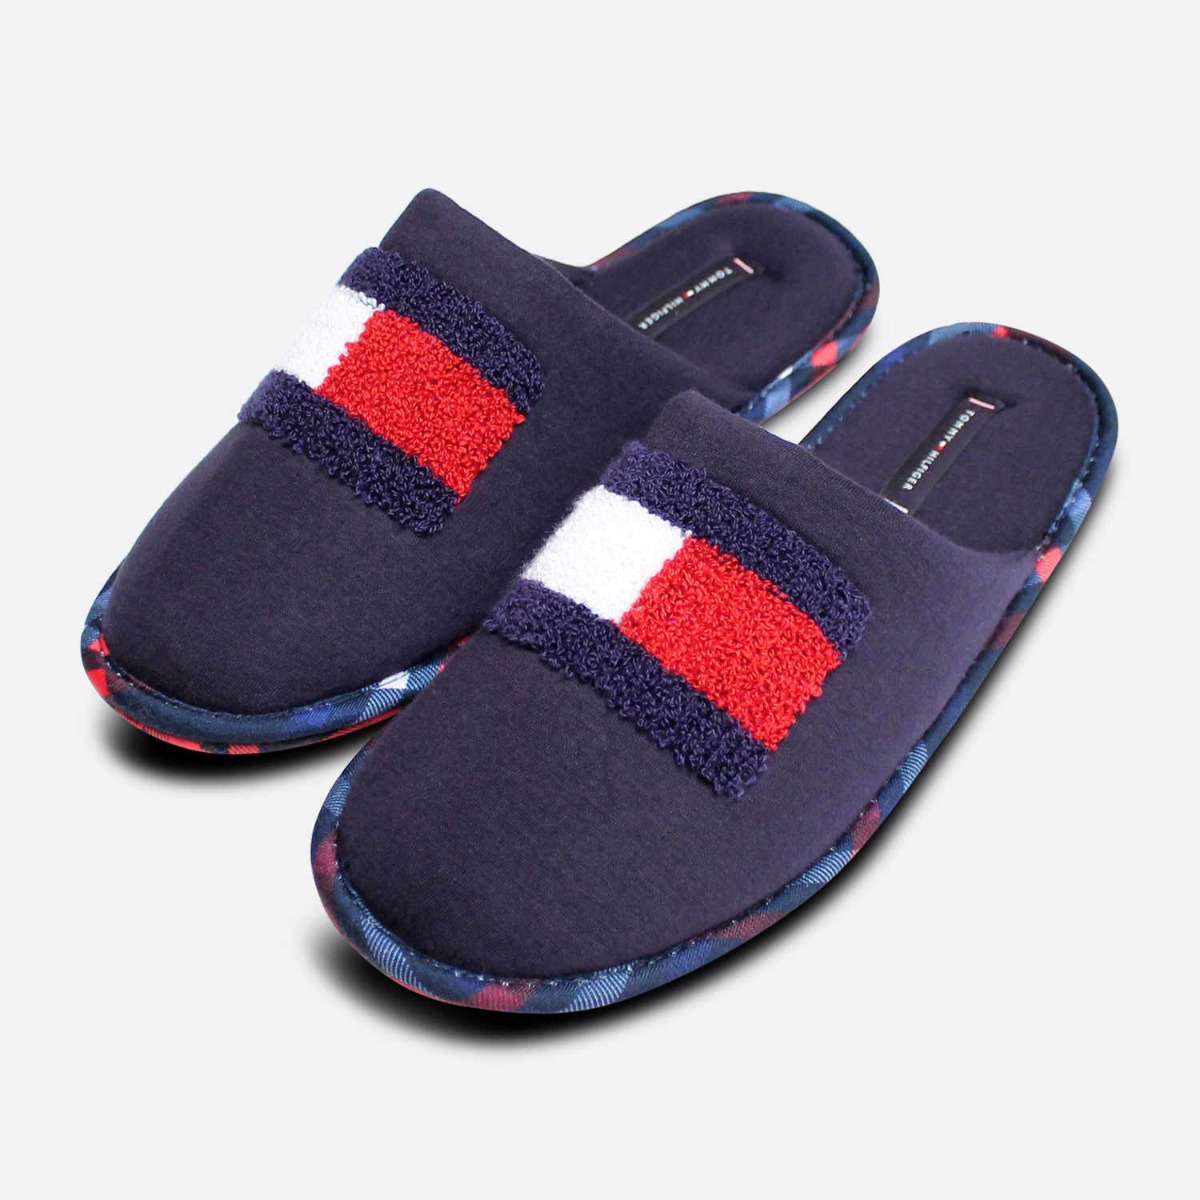 mens slippers on ebay